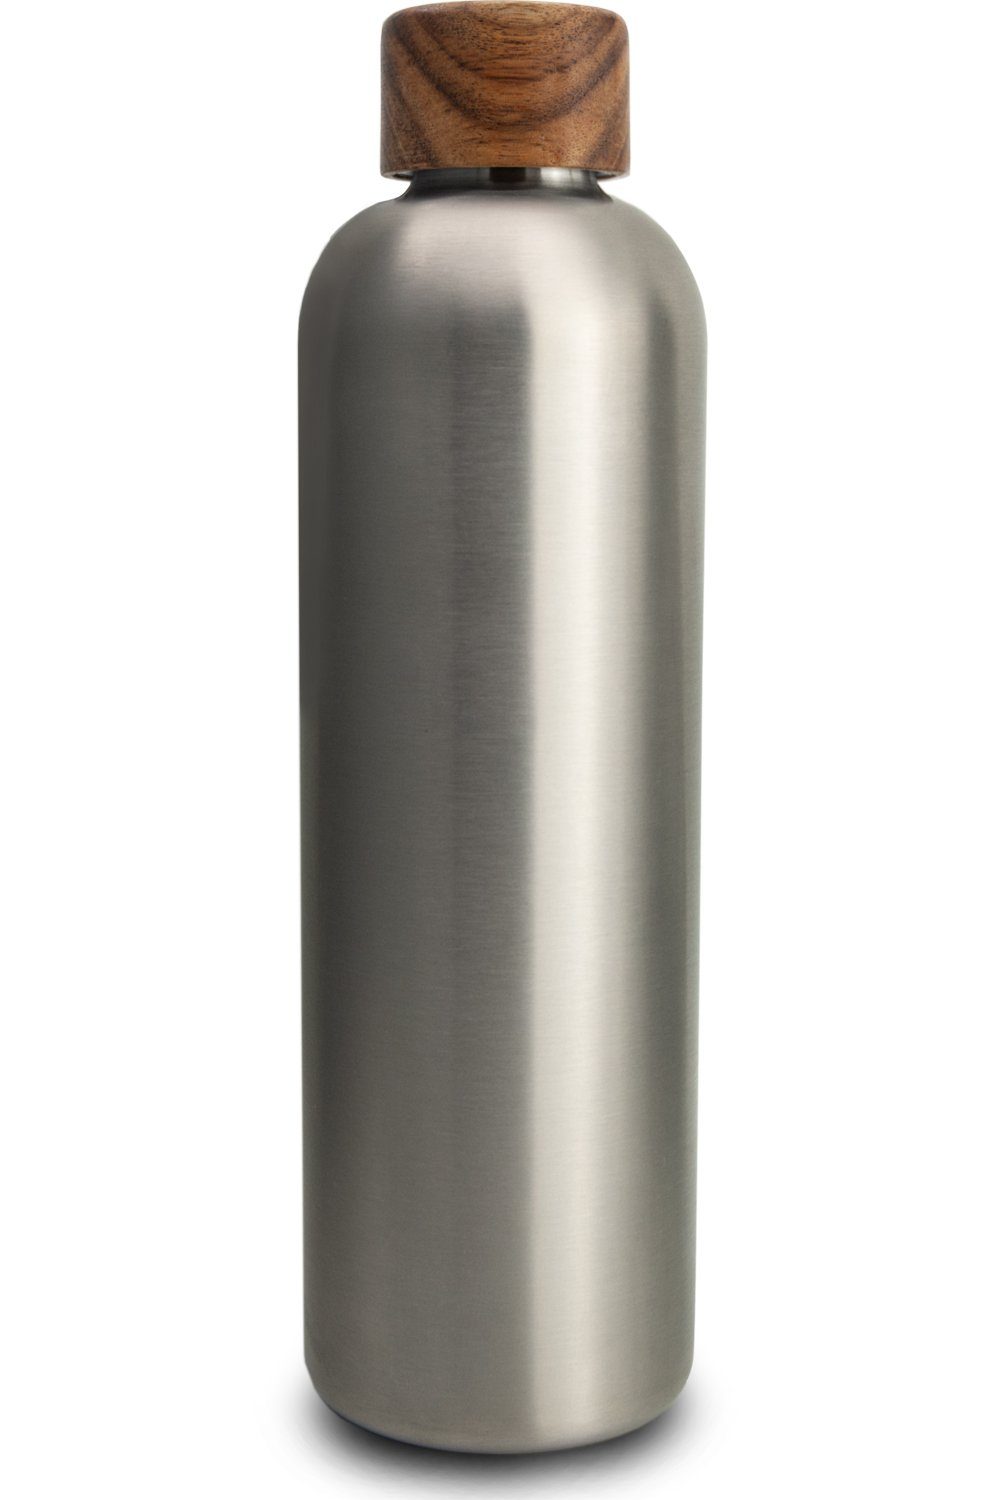 TRENDY AND NEW Trinkflasche T&N Edelstahl Trinkflasche 1 Liter - Wood Edition, Thermosflasche 1l für Büro, auslaufsichere, robuste, isolierte Wasserflasche 1000ml für Kohlensäure, Thermoskanne für unterwegs, Isolierflasche für Tee & Kaffee, hält 14h HEISS 29h EISKALT, Flasche für Sprudel-Wasser Stainless Steel